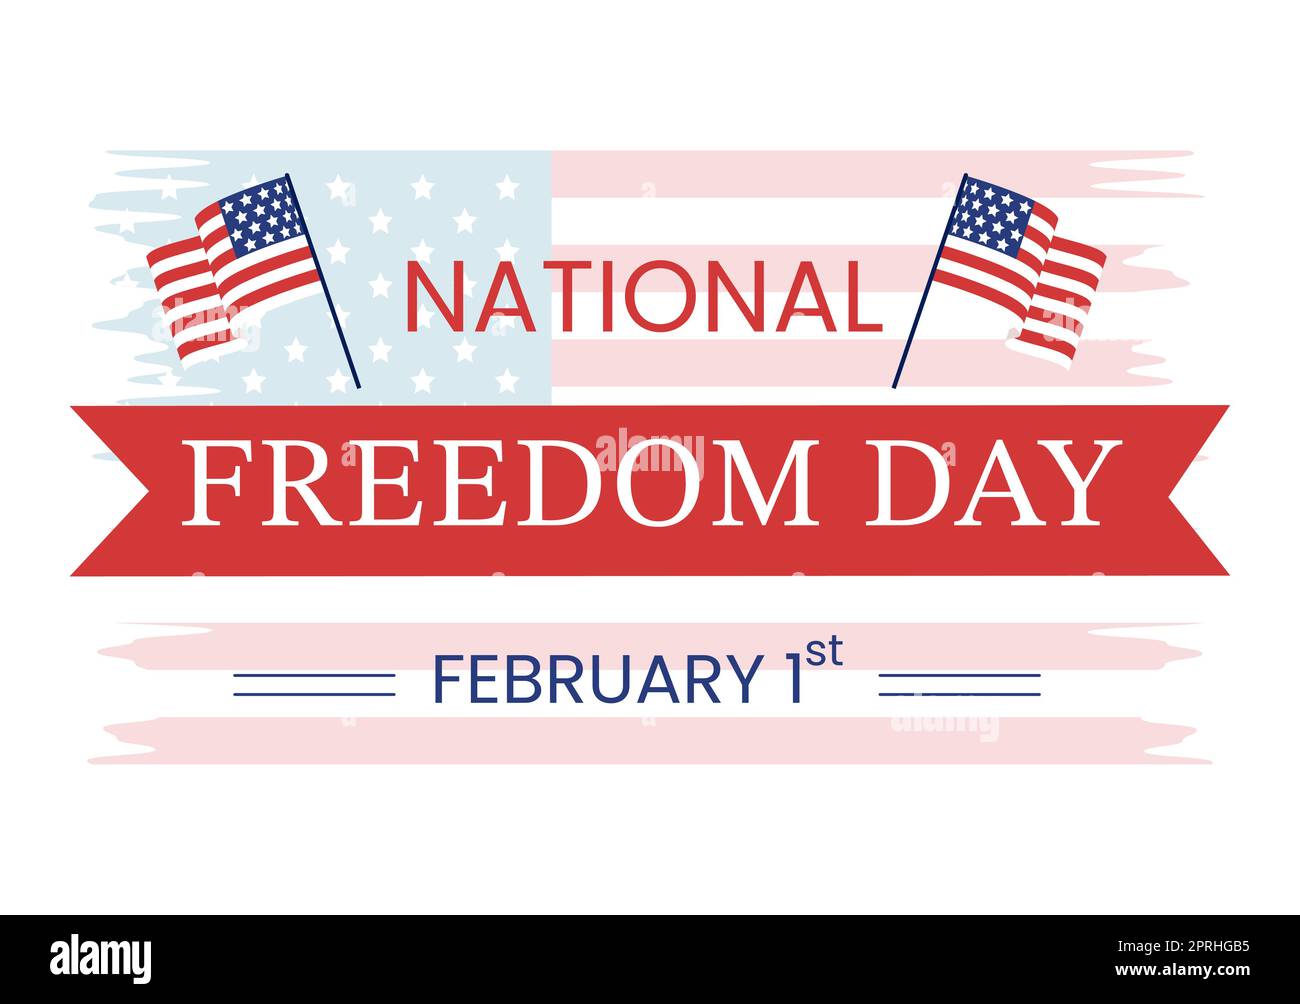 National Freedom Day Vorlage Handgezeichnete Cartoon flache Illustration mit amerikanischer Flagge und Händen brechen ein Handschellen-Design Stockfoto